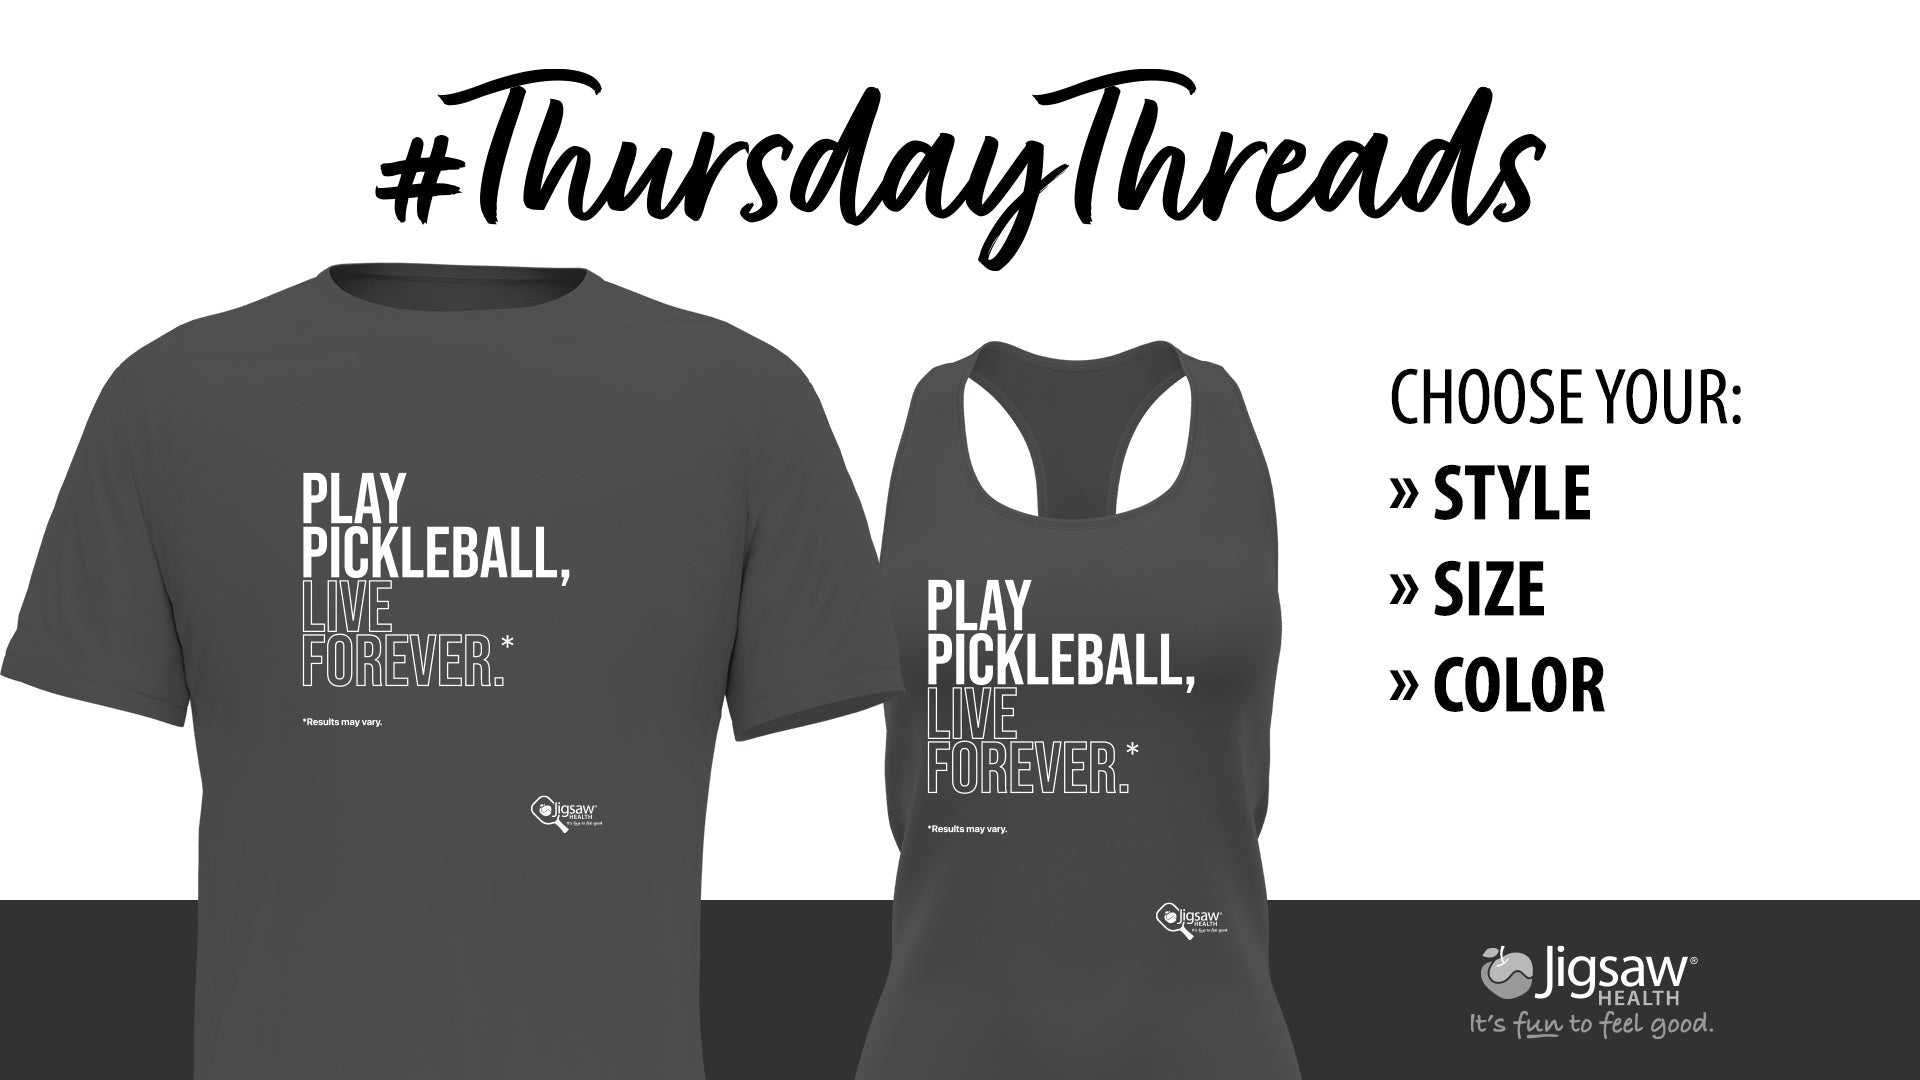 Play Pickleball, Live Forever. #ThursdayThreads